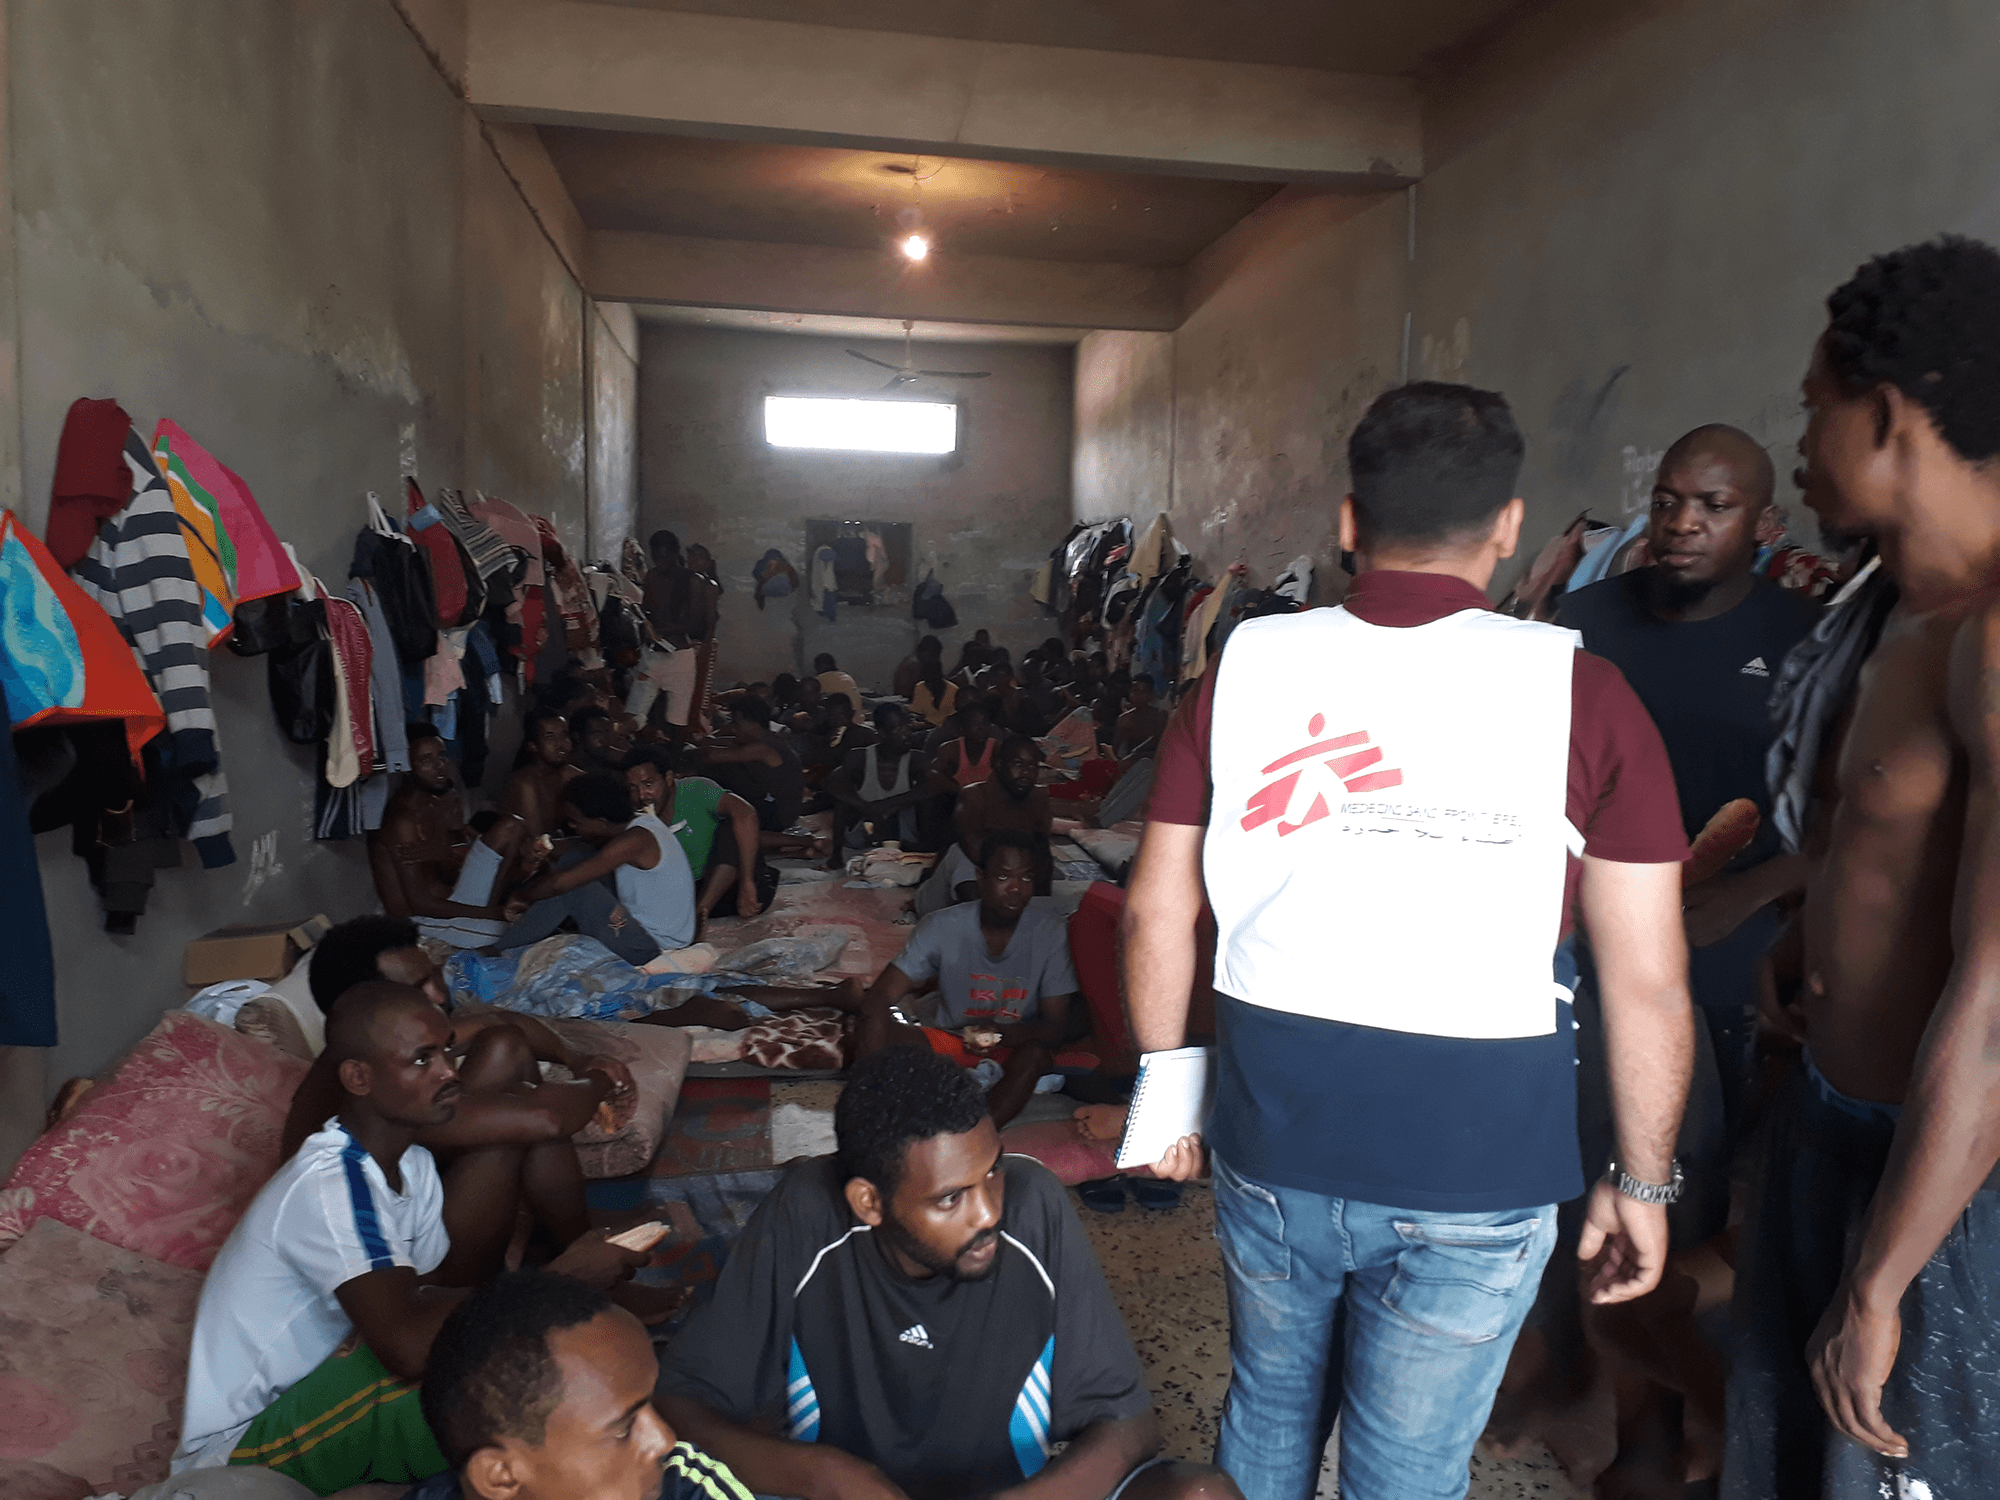 An MSF team member inside a detention center in Libya.